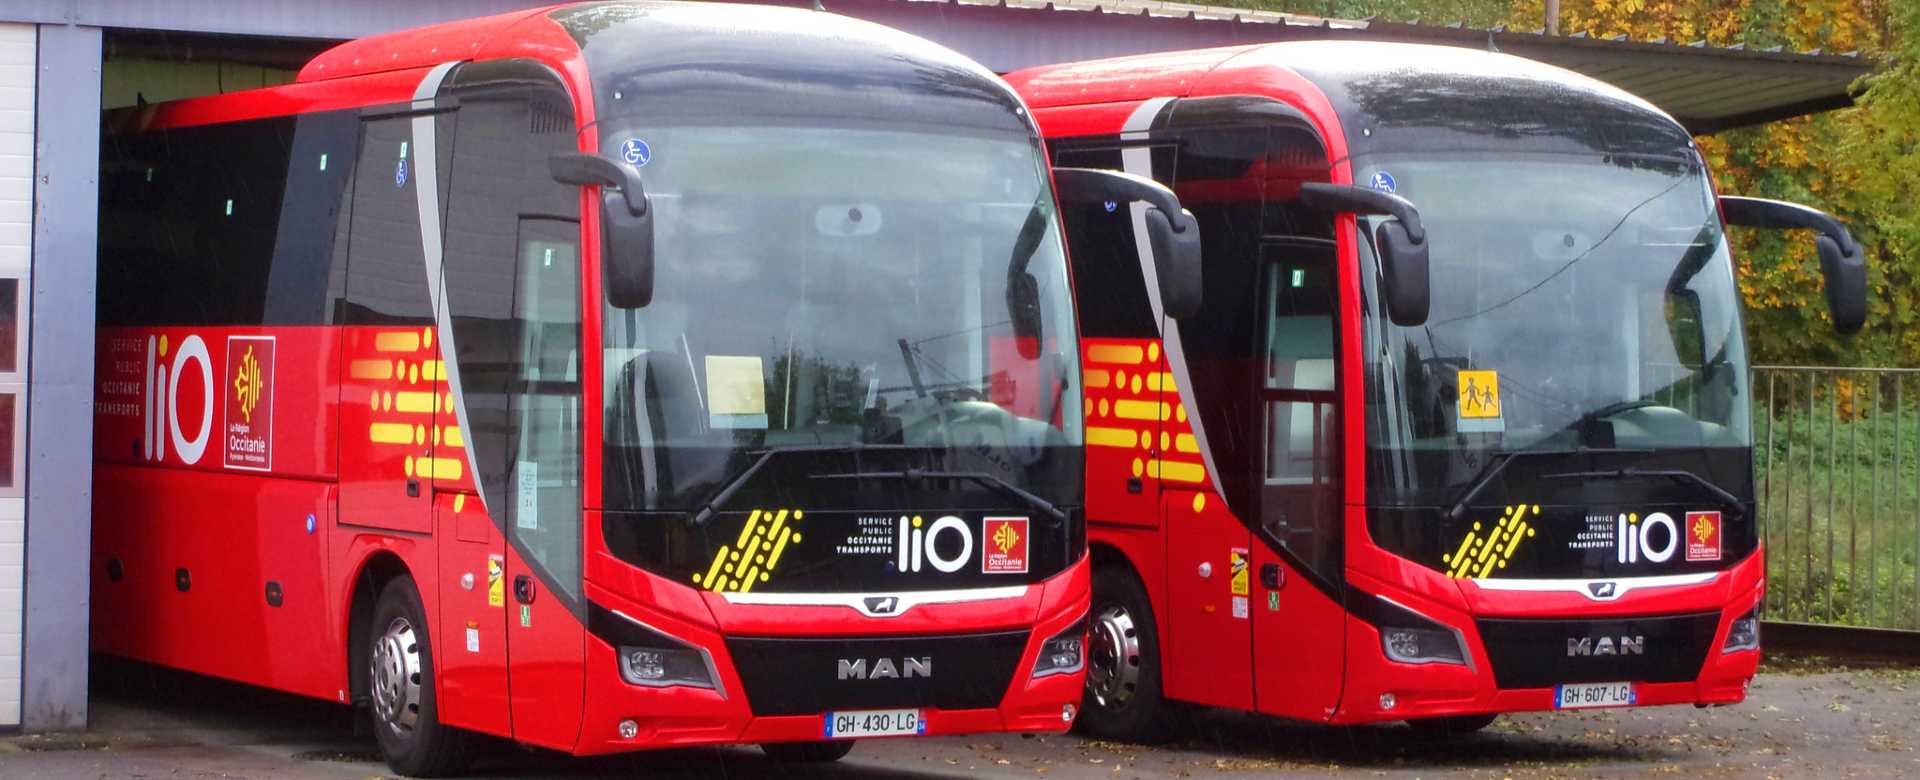 Bus ligne 201 en Aveyron, de Laguiole à Rodez (liO)